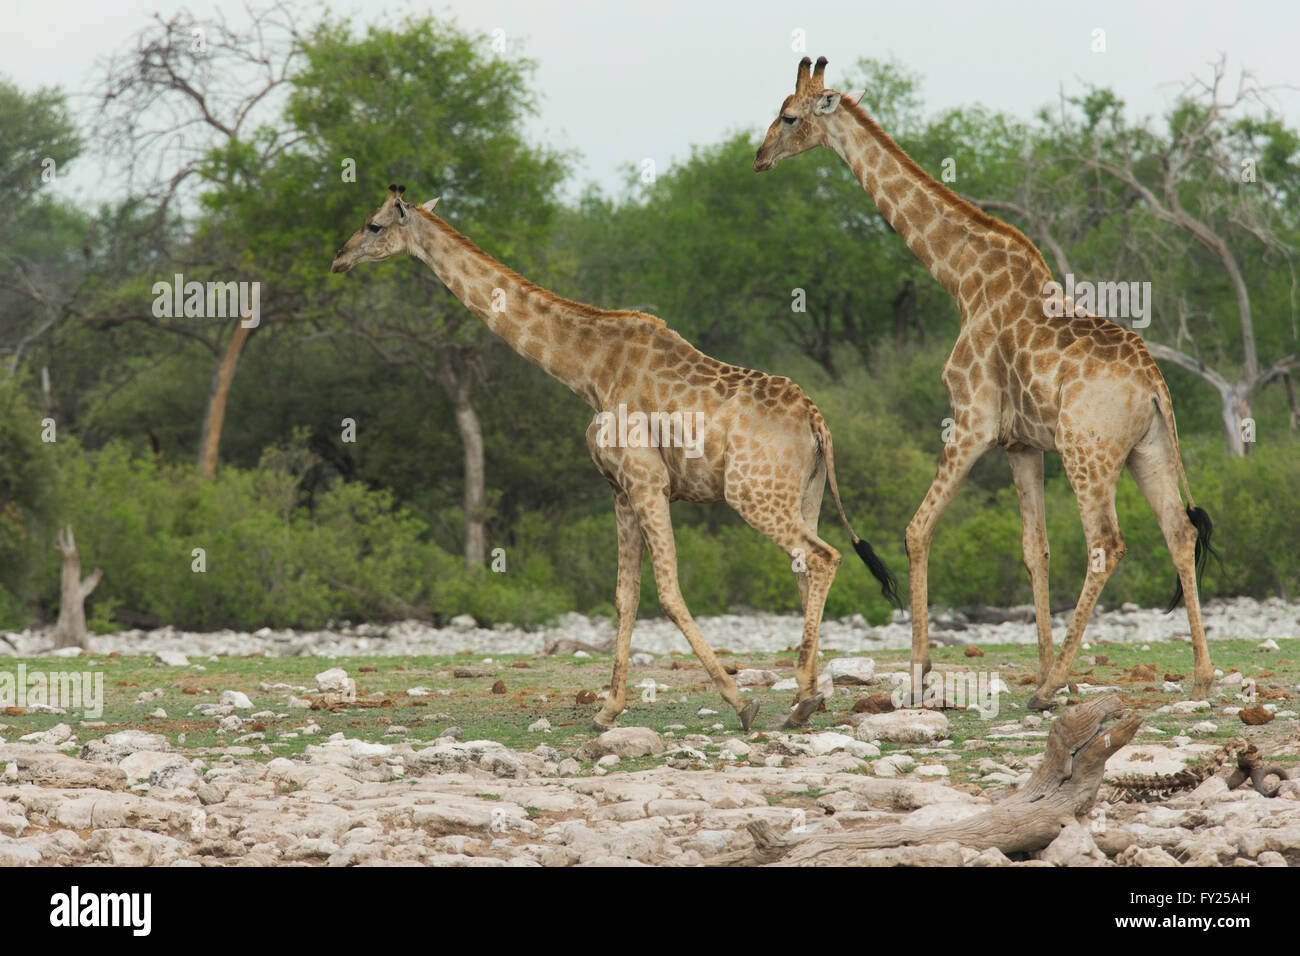 La girafe est un mammifère ongulé à longs doigts même, le plus grand animal terrestre vivant et le plus grand de ses espèces de ruminants. Banque D'Images